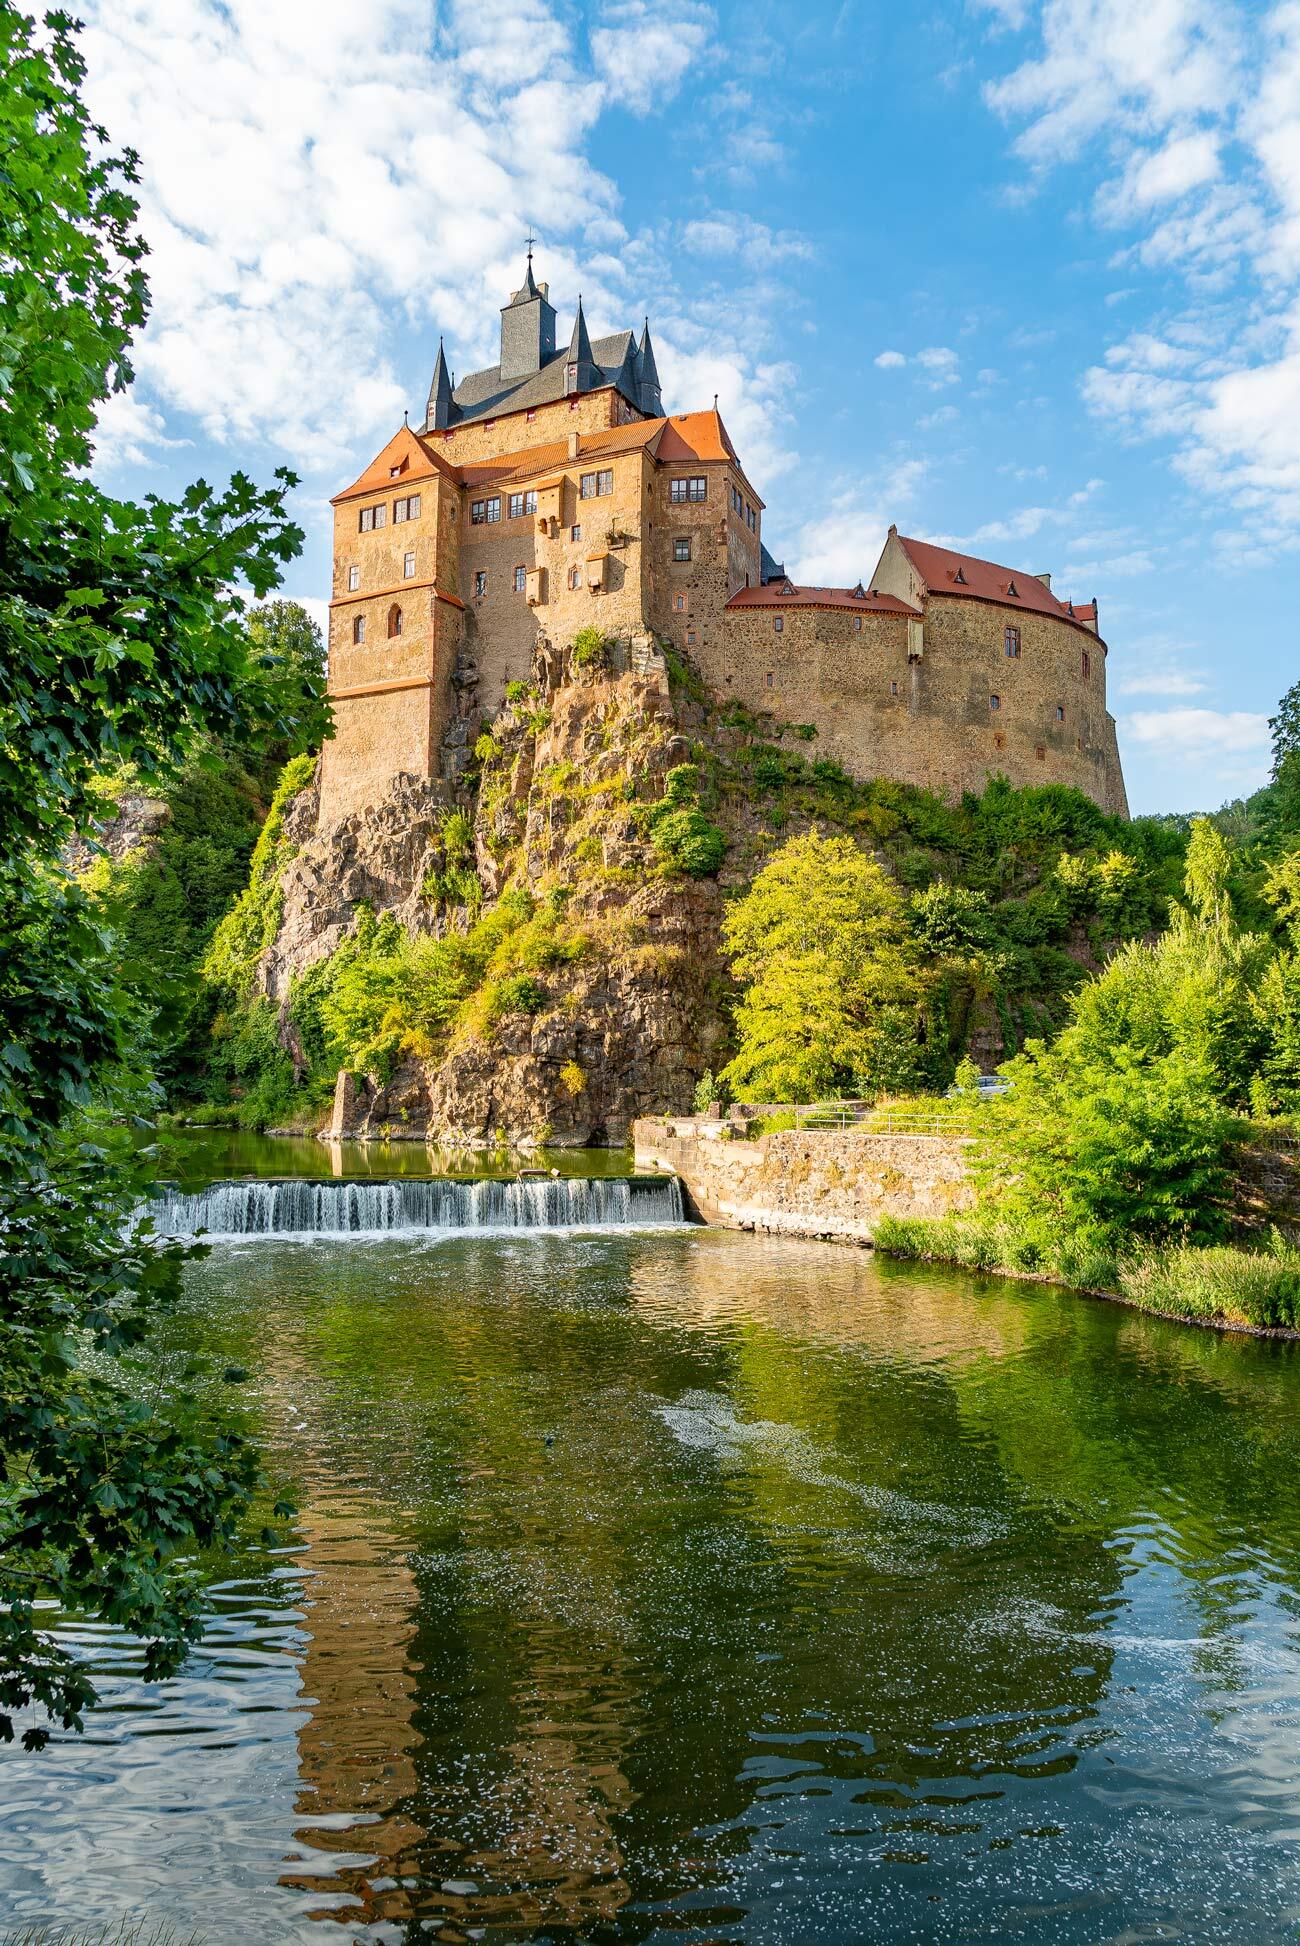 Burgen und Schlösser nahe Leipzig: Burg Kriebstein auf einem hohen Felsen direkt an einem Fluss gelegen